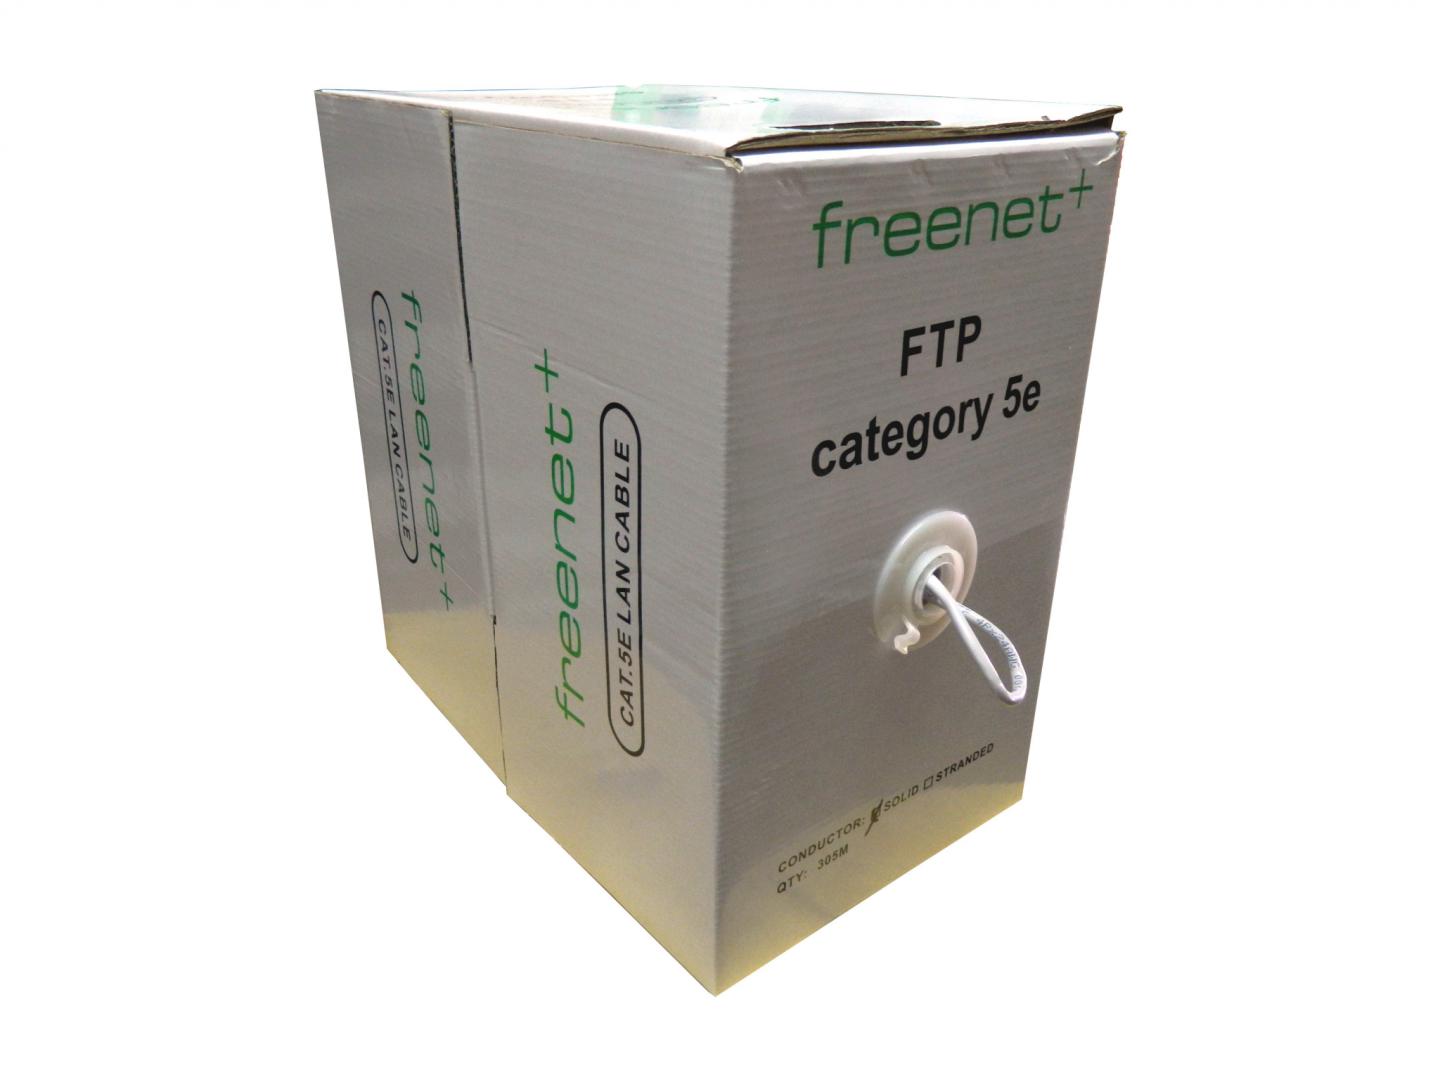 Cablu FTP categoria 5e CCA FRE-FTP5E / Freenet - rola 305m.